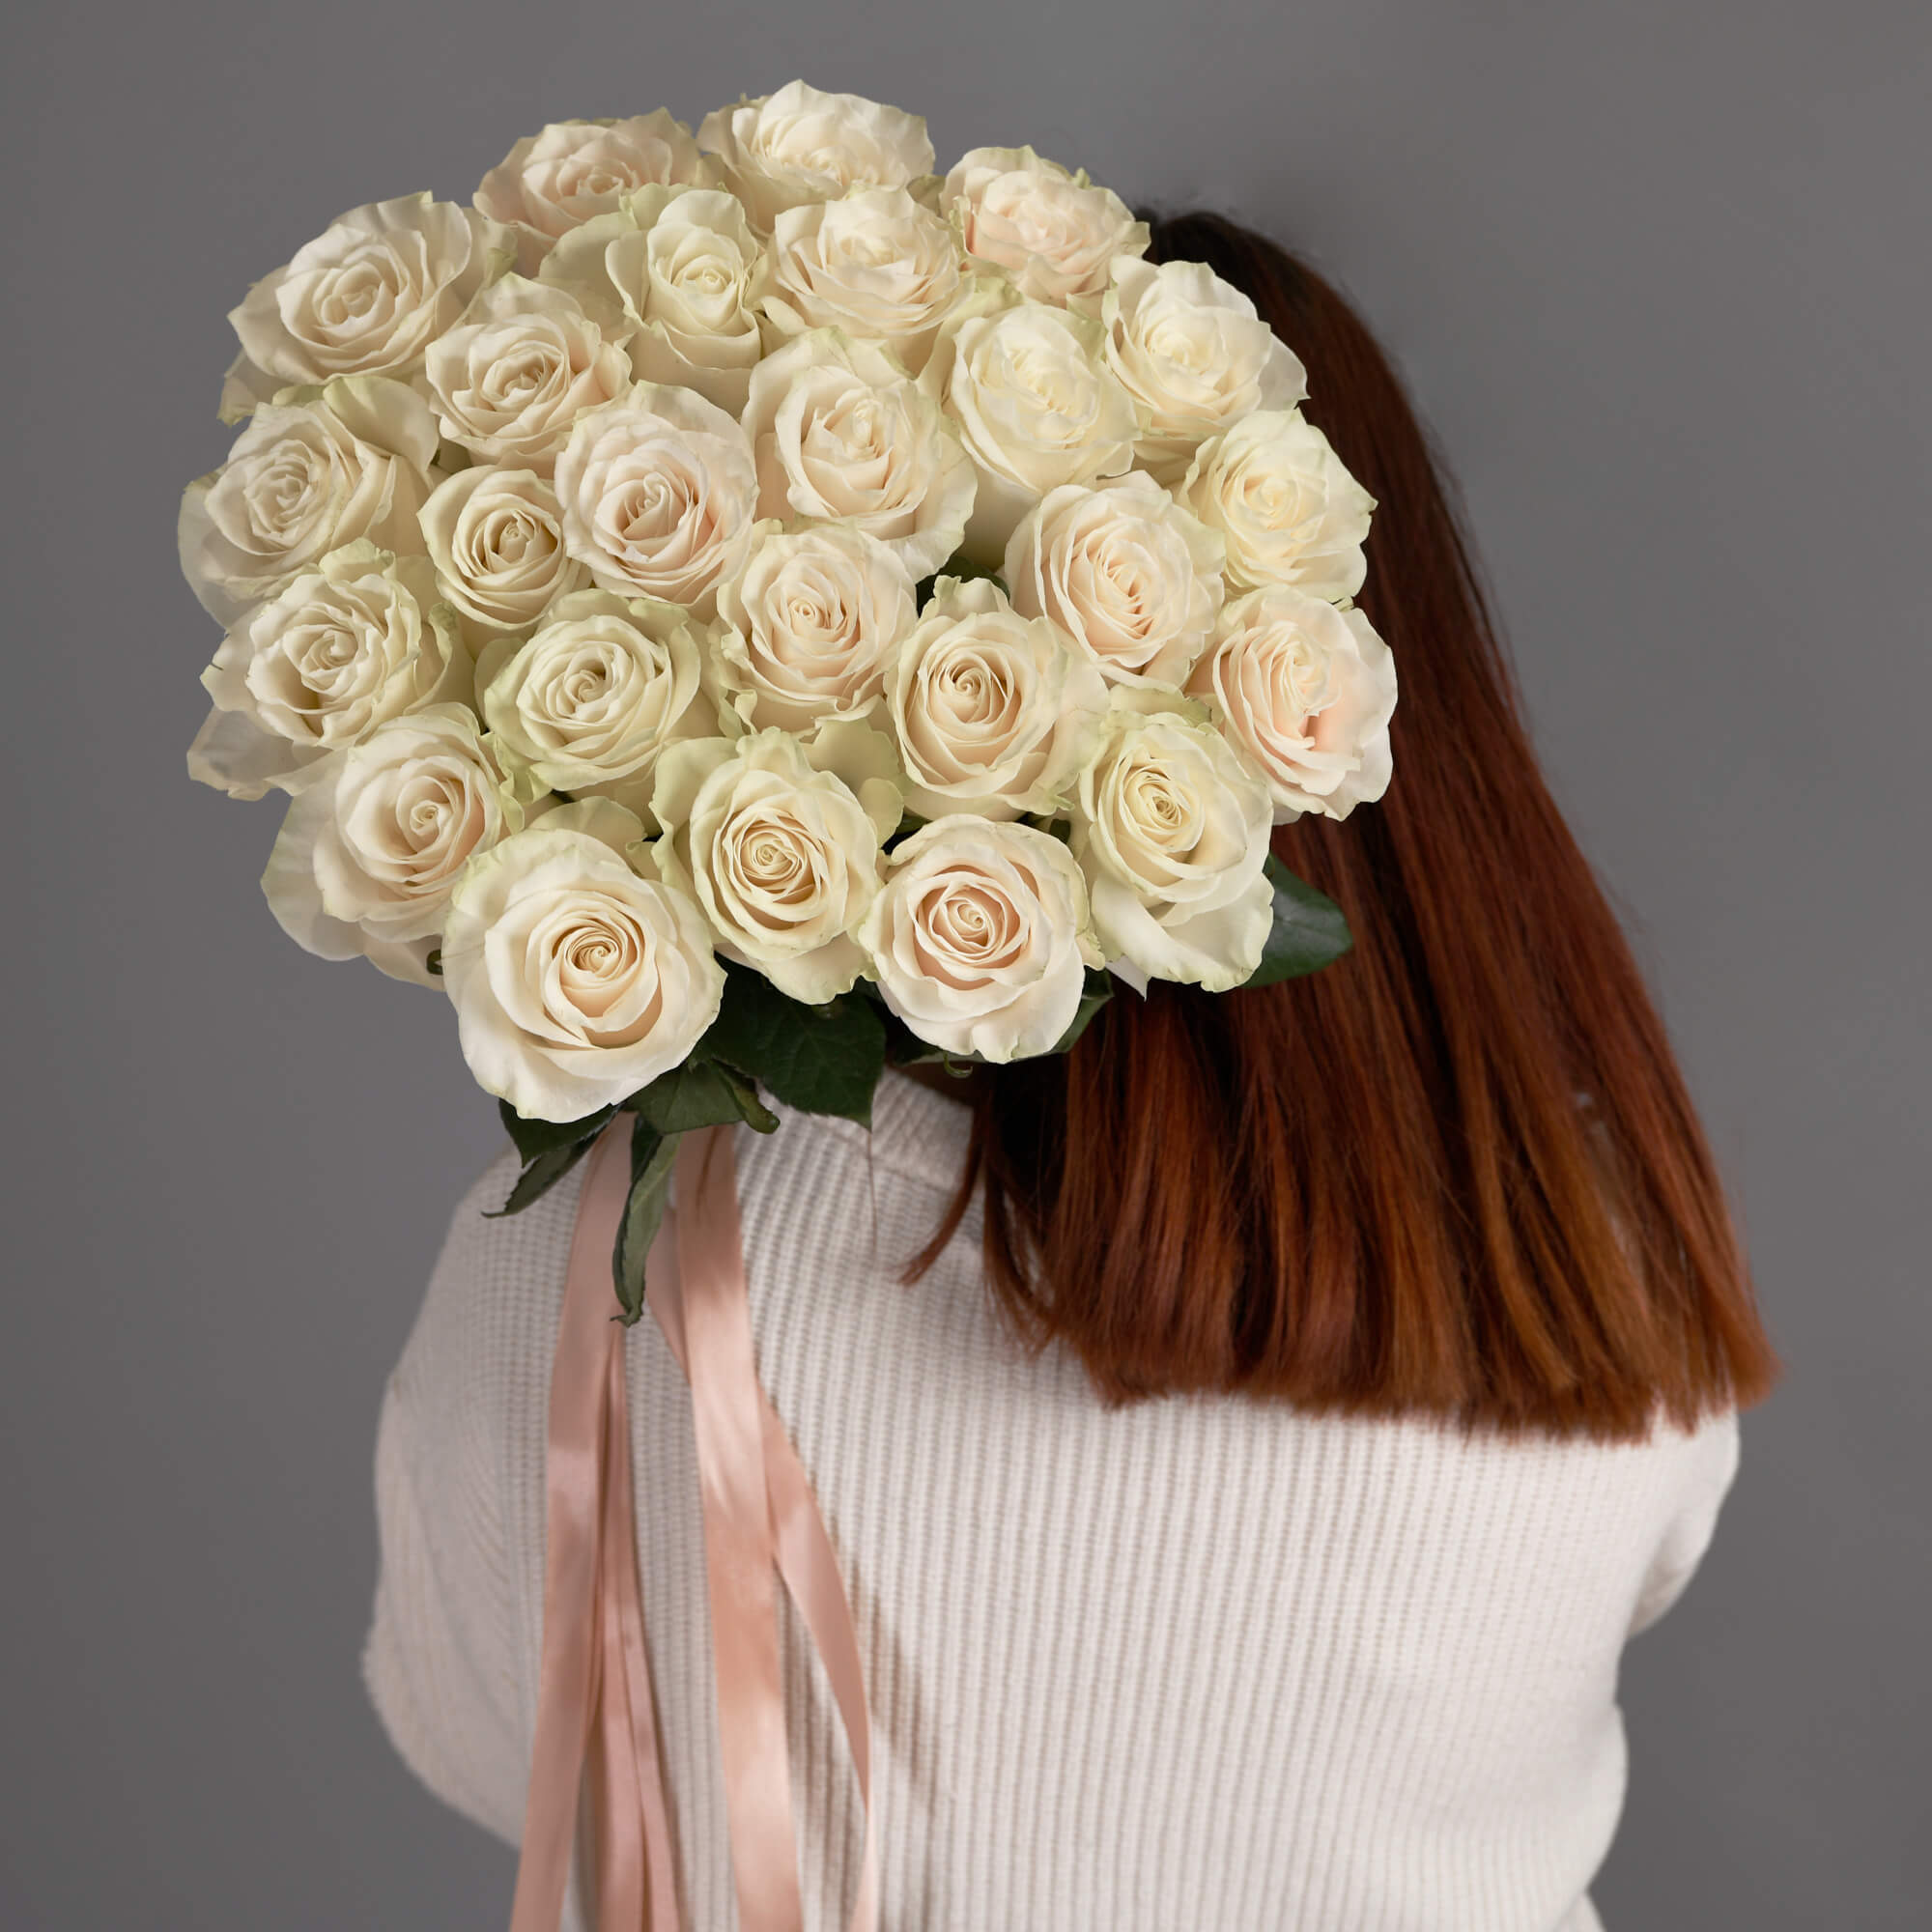 Buchet cu 25 trandafiri albi